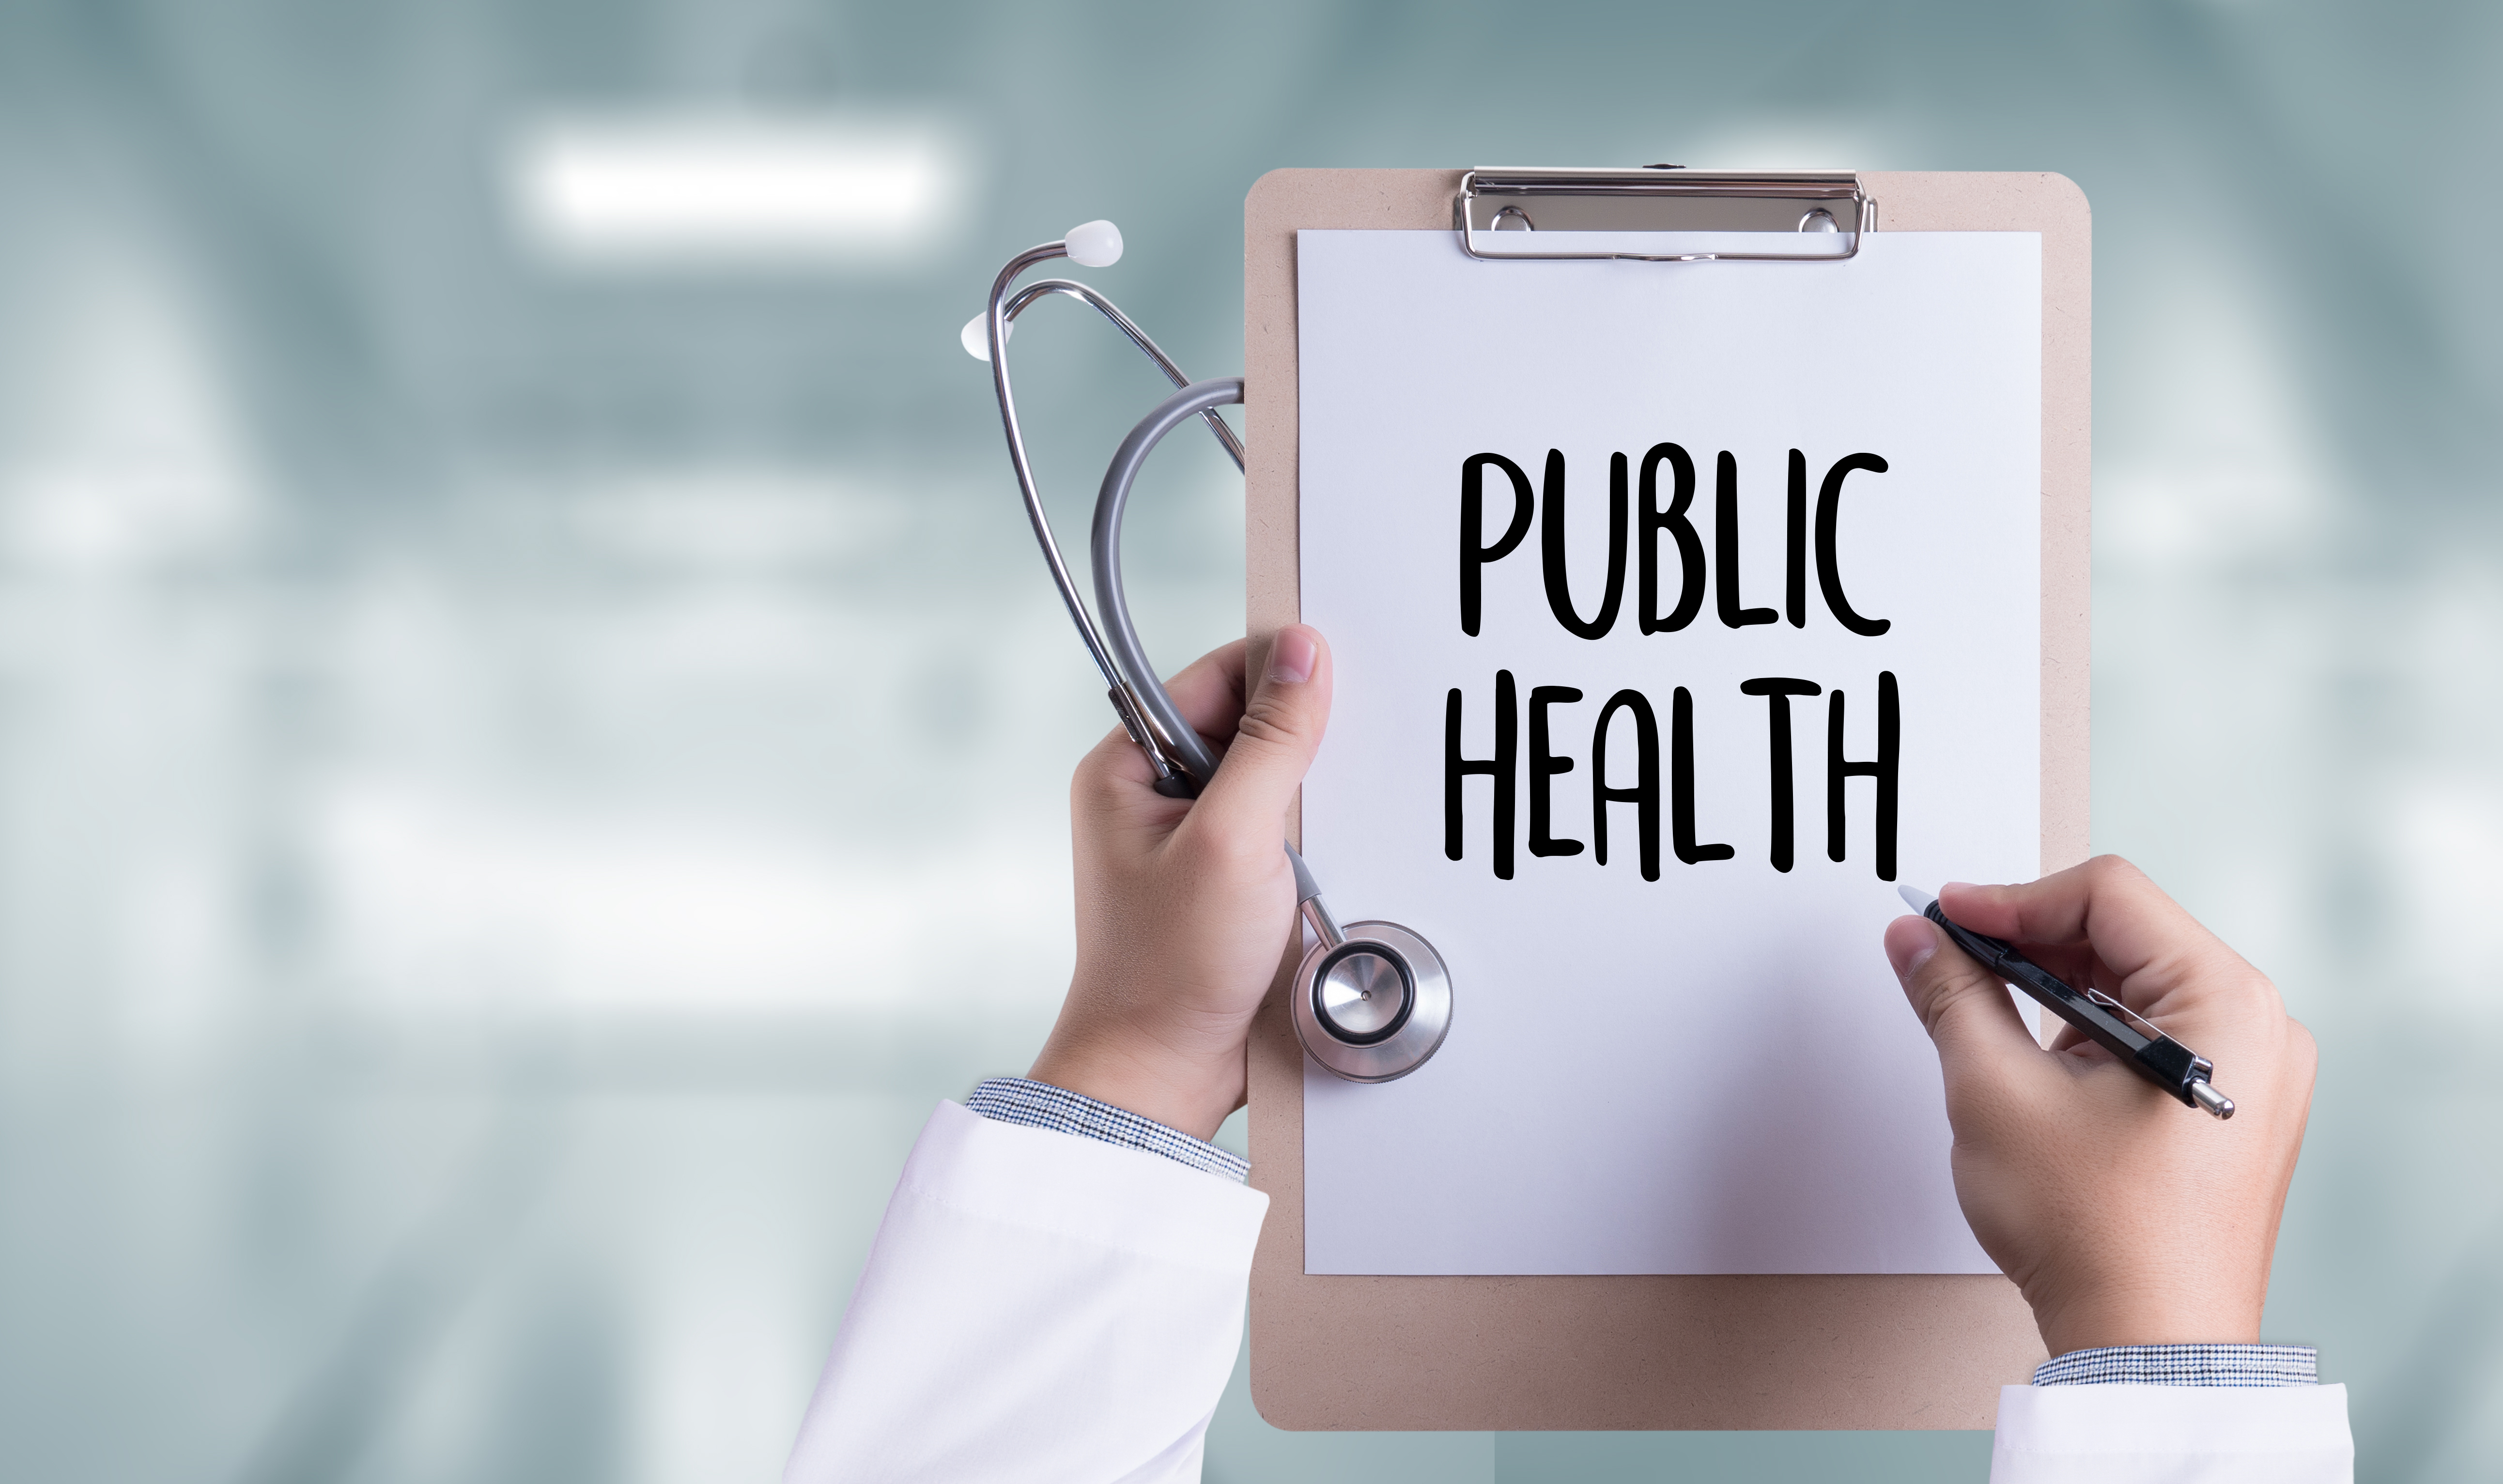 Career in Public Health